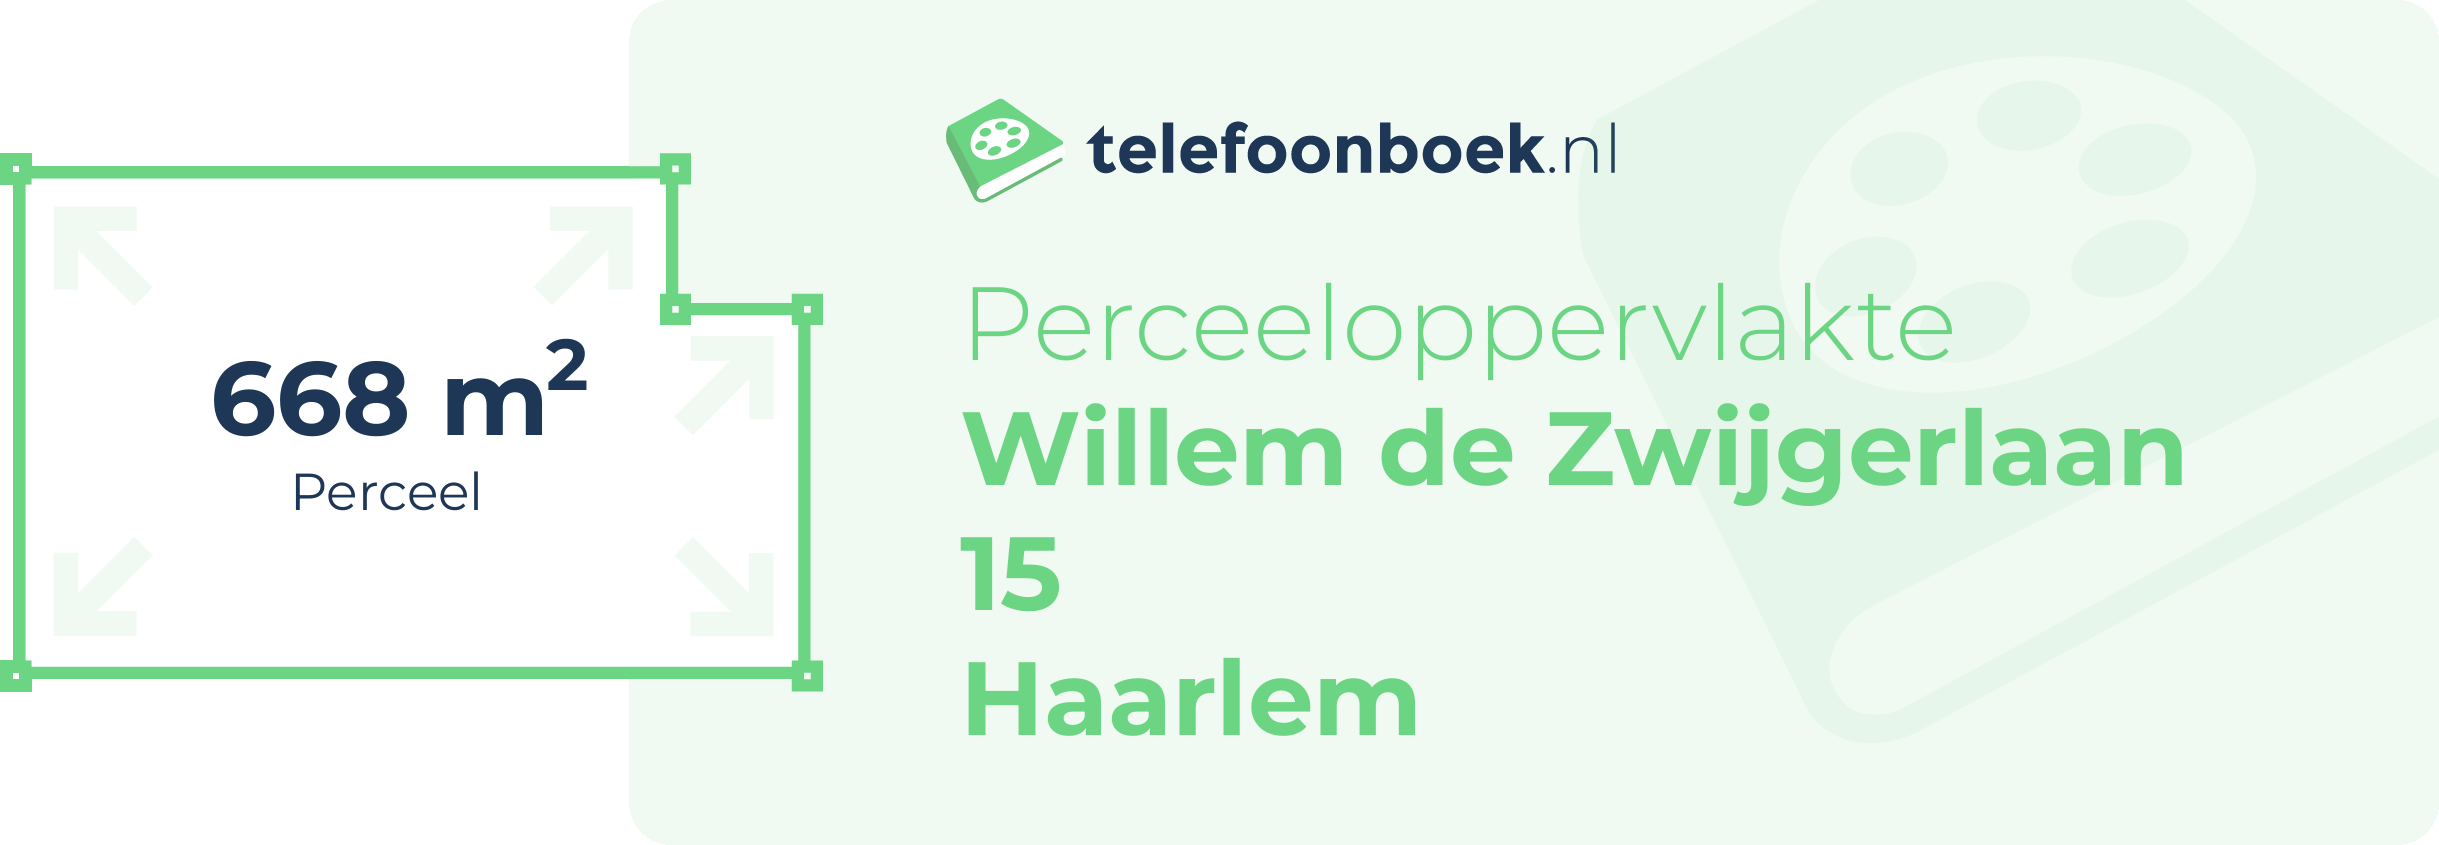 Perceeloppervlakte Willem De Zwijgerlaan 15 Haarlem